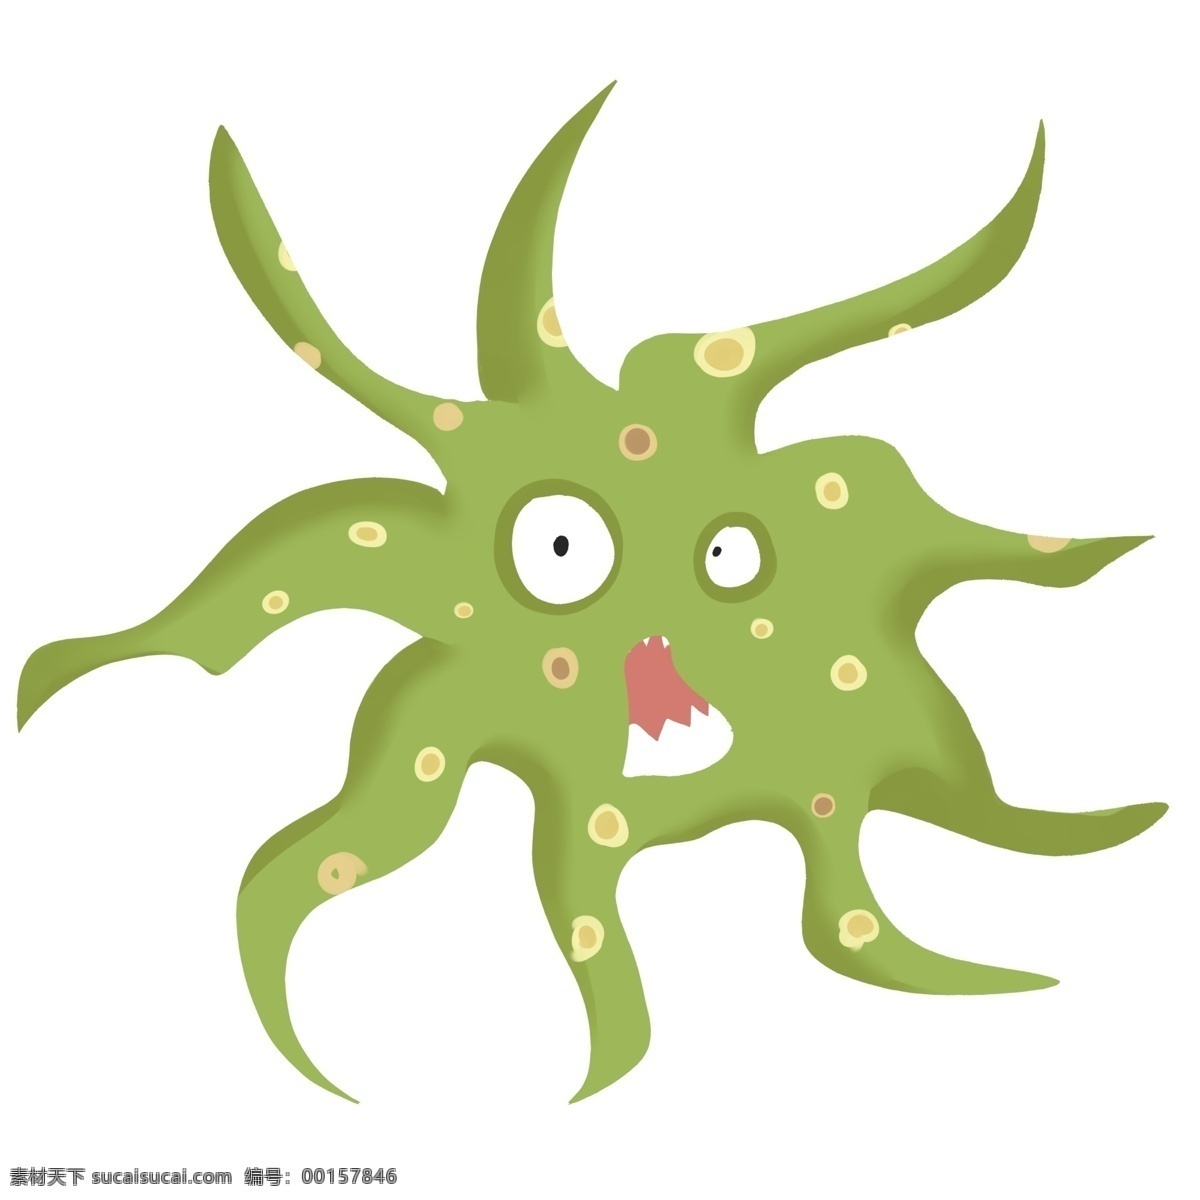 绿色 有害 细菌 插画 绿色的细菌 有害细菌 卡通插画 细菌插画 病菌插画 有益细菌 怪物的细菌